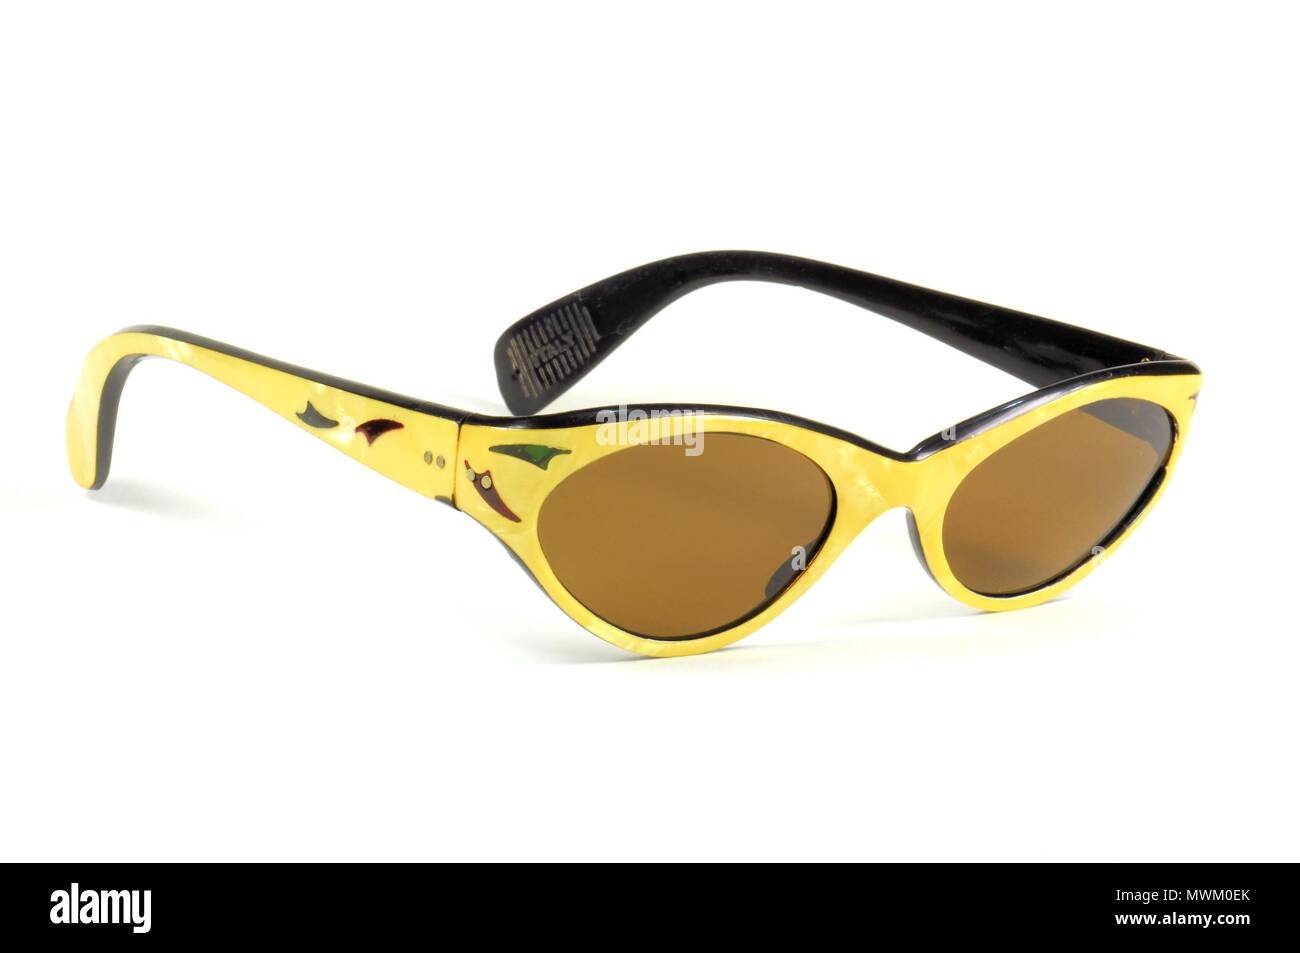 Belle vintage lunettes jaune pour femme libre isolé sur blanc. Années 1960. Banque D'Images